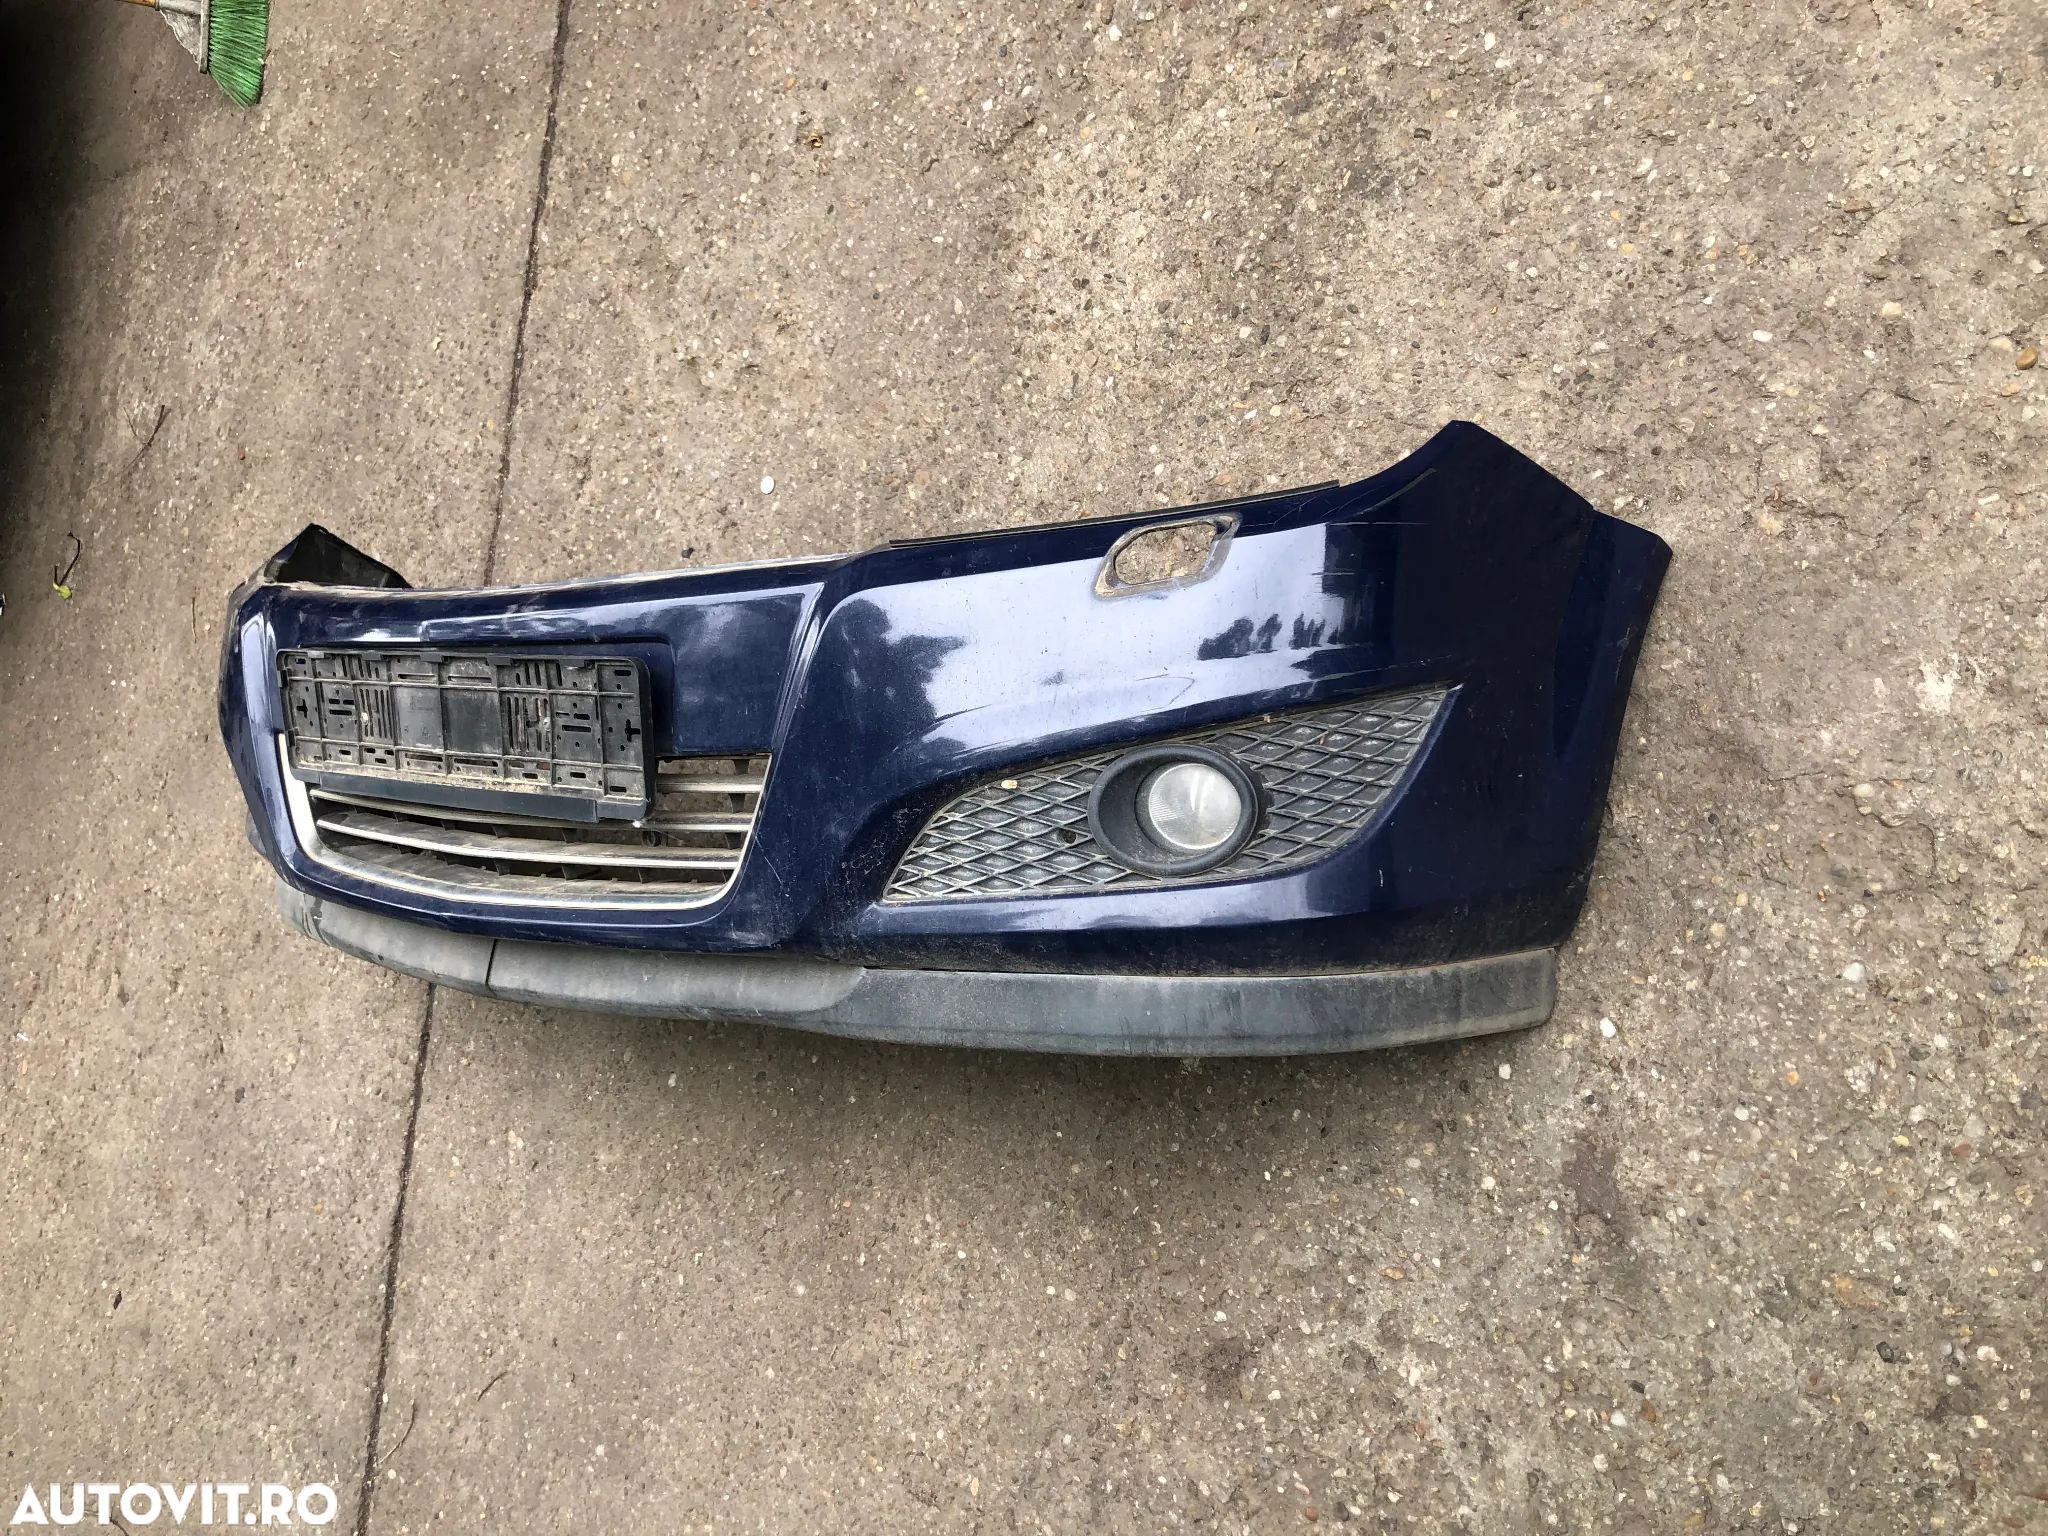 Bara fata Opel Astra H facelift albastru mici defecte - 1